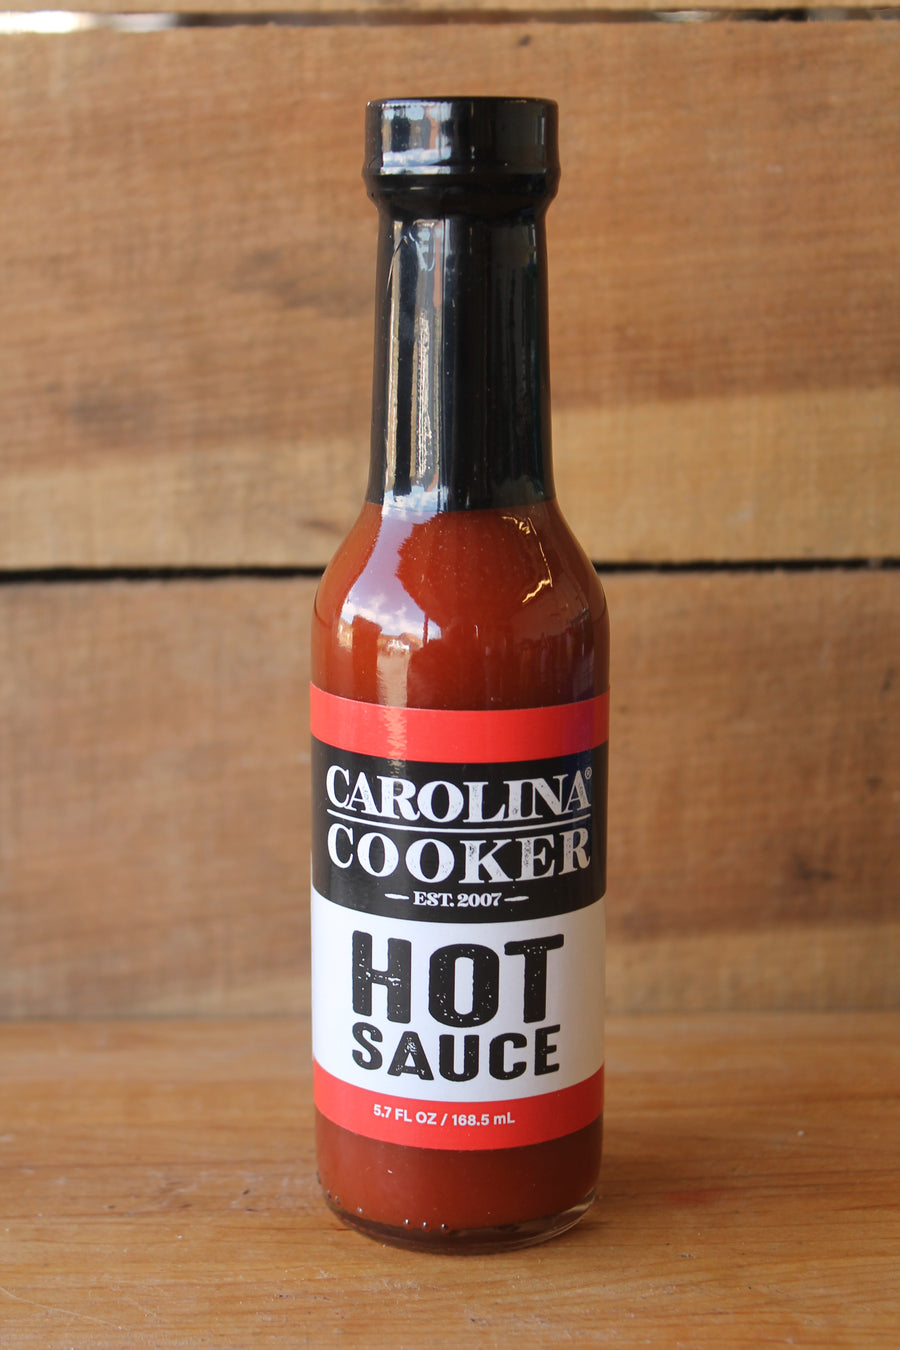 Carolina Cooker Hot Sauce